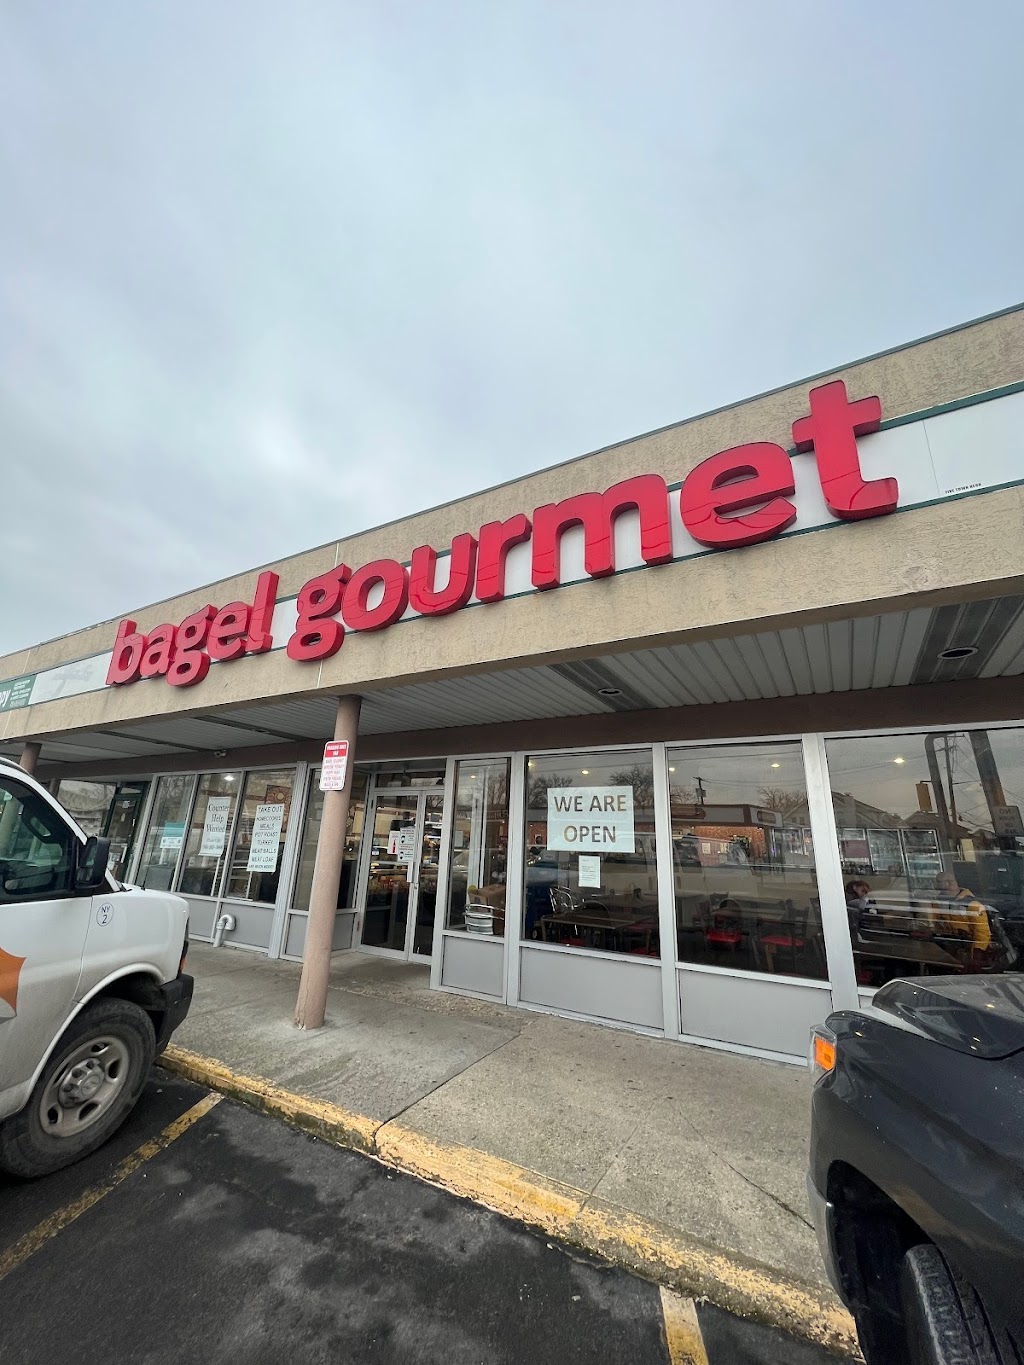 Bagel Gourmet Inc. | 151 Main St, East Rockaway, NY 11518 | Phone: (516) 593-0400